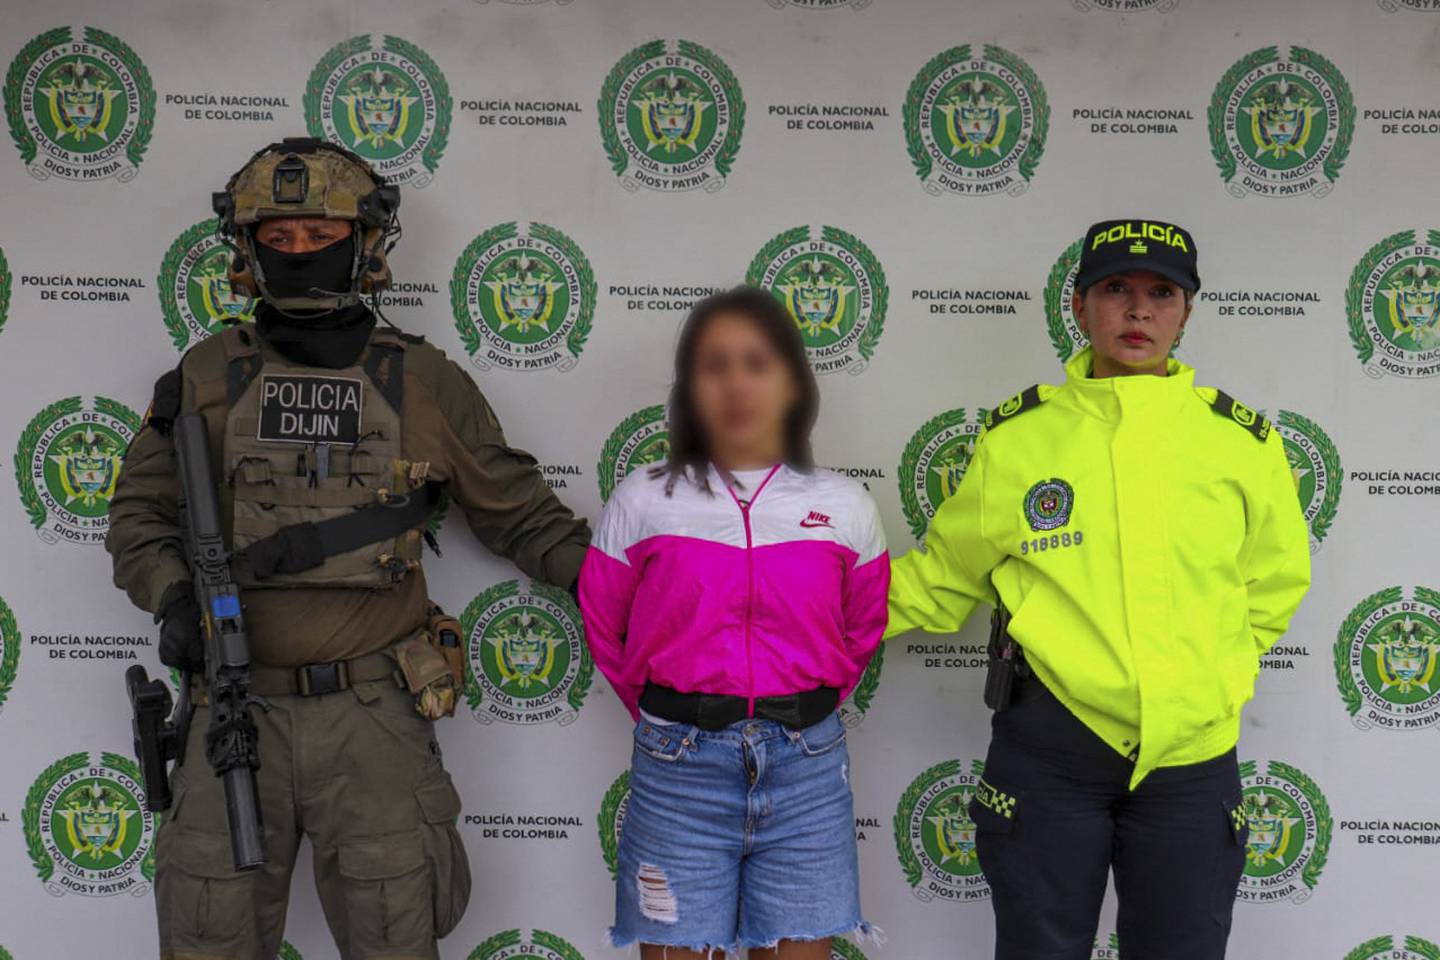 Esta imagen publicada por la Policía Nacional de Colombia muestra a Wanda del Valle Bermúdez, conocida como la "Bebecita del TikTok", después de ser detenida en Bogotá este jueves.